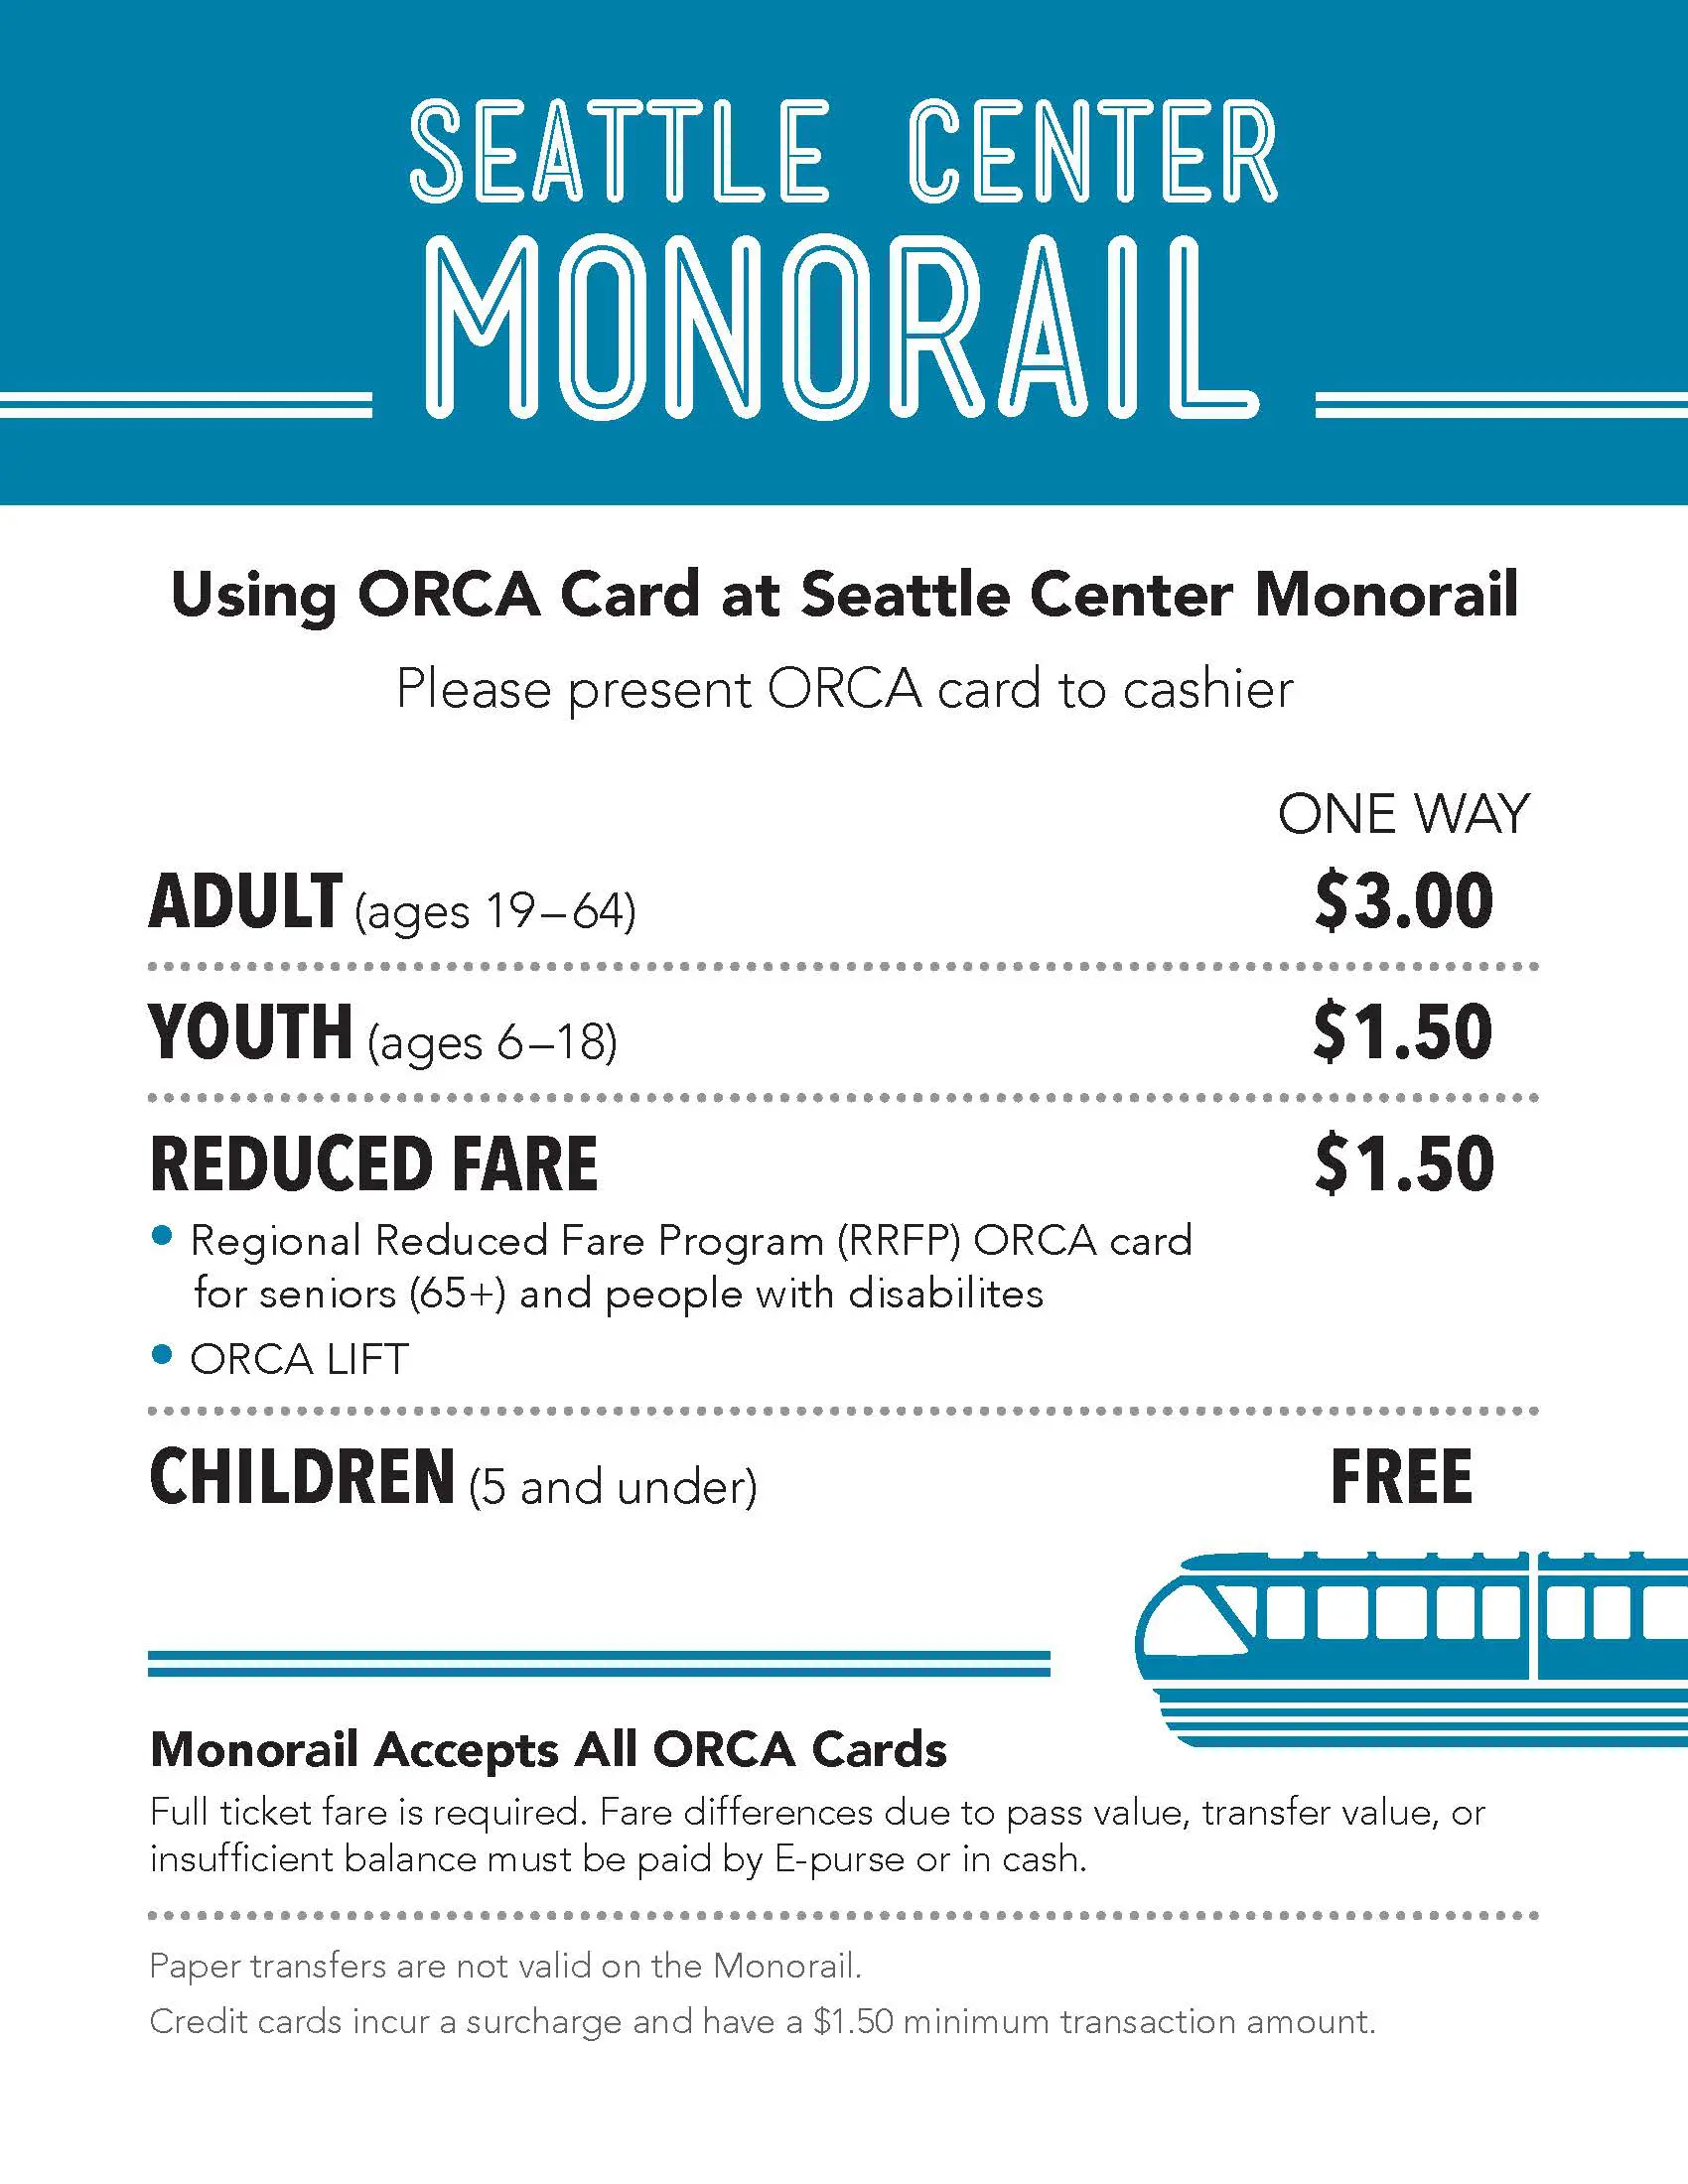 Monorail ORCA fares